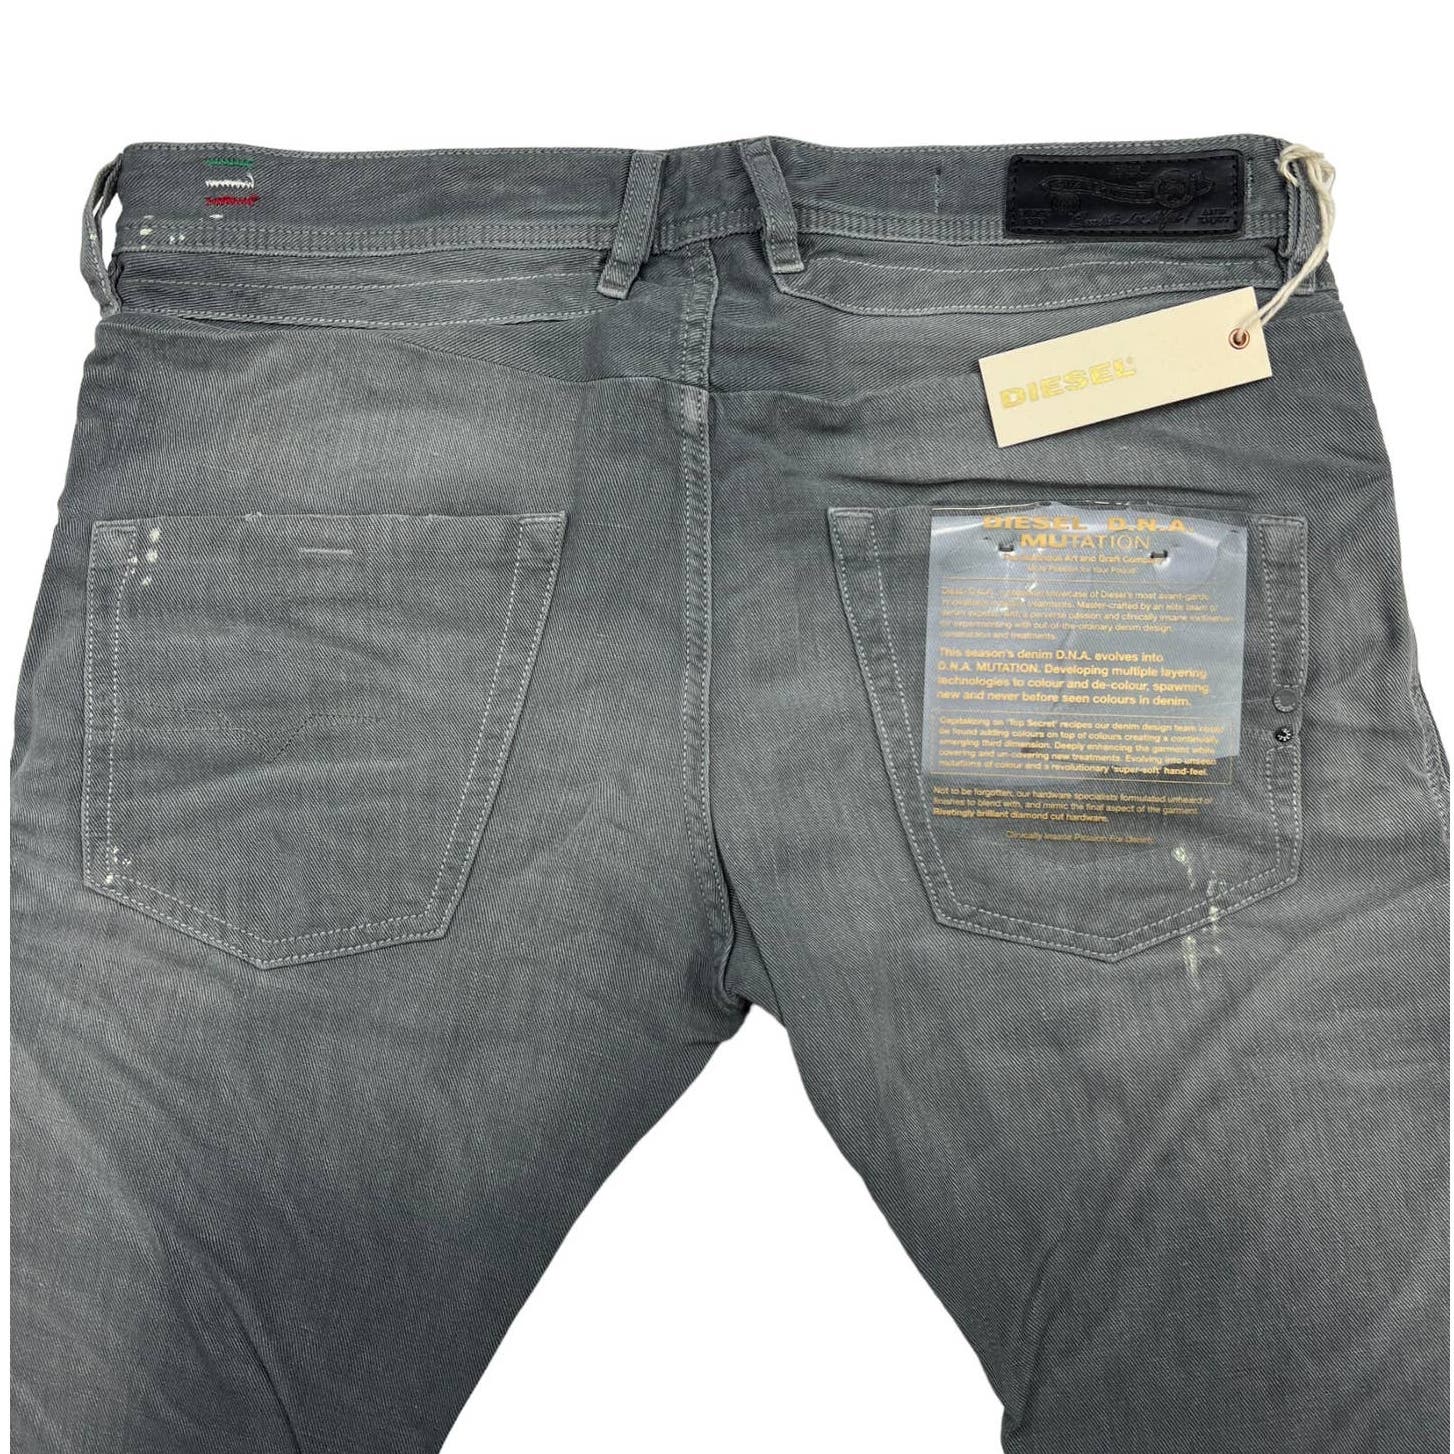 Diesel Men Grey Jeans Slim Fit US 27 Buttons Linen Cotton